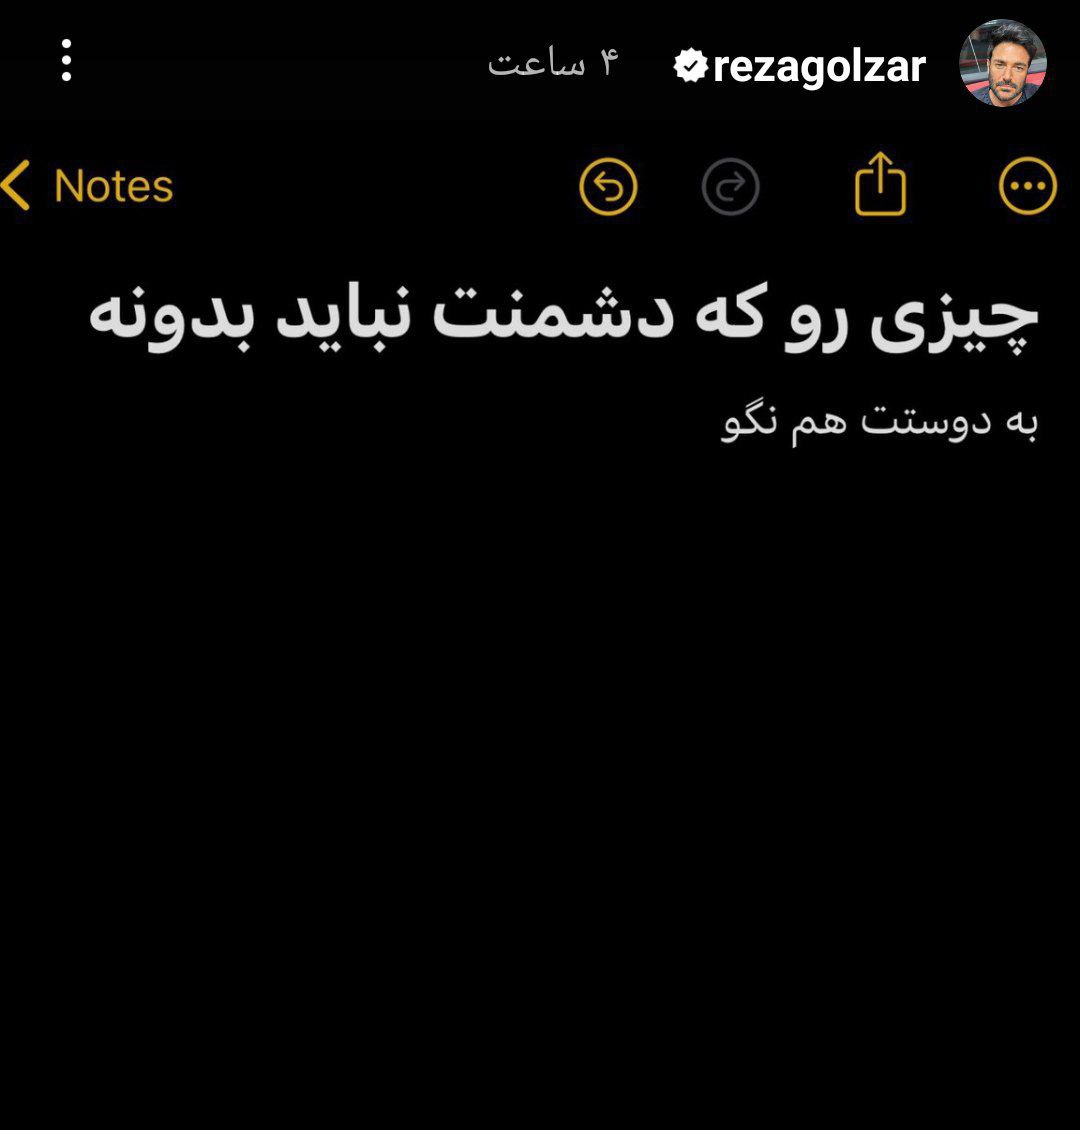 استوری معنادار محمدرضا گلزار جنجالی شد / تیکه سنگین آقای بازیگر + عکس